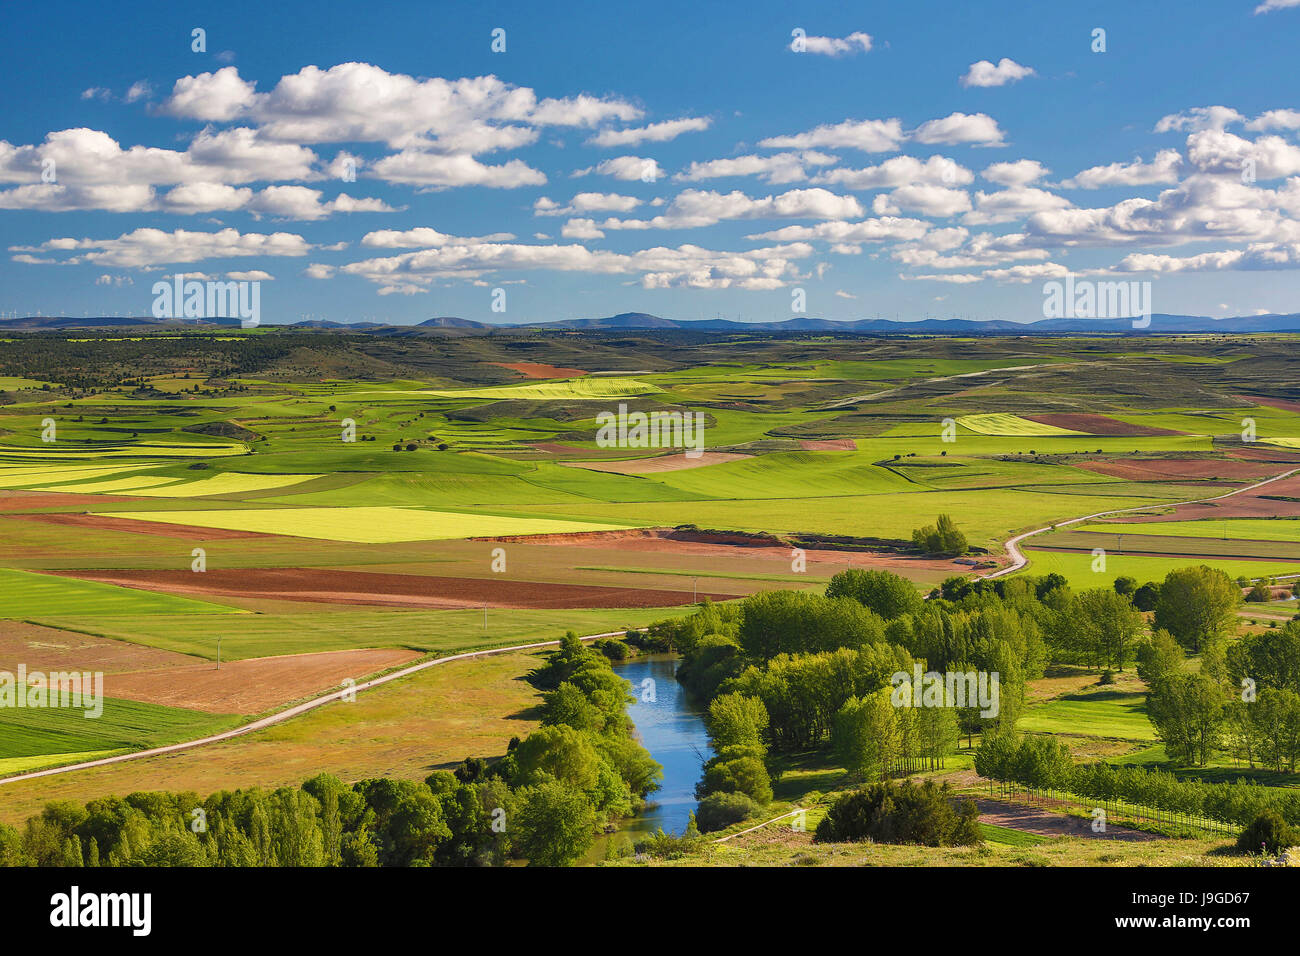 Spain, Castilla Leon Community, Soria Province Landscape, Stock Photo